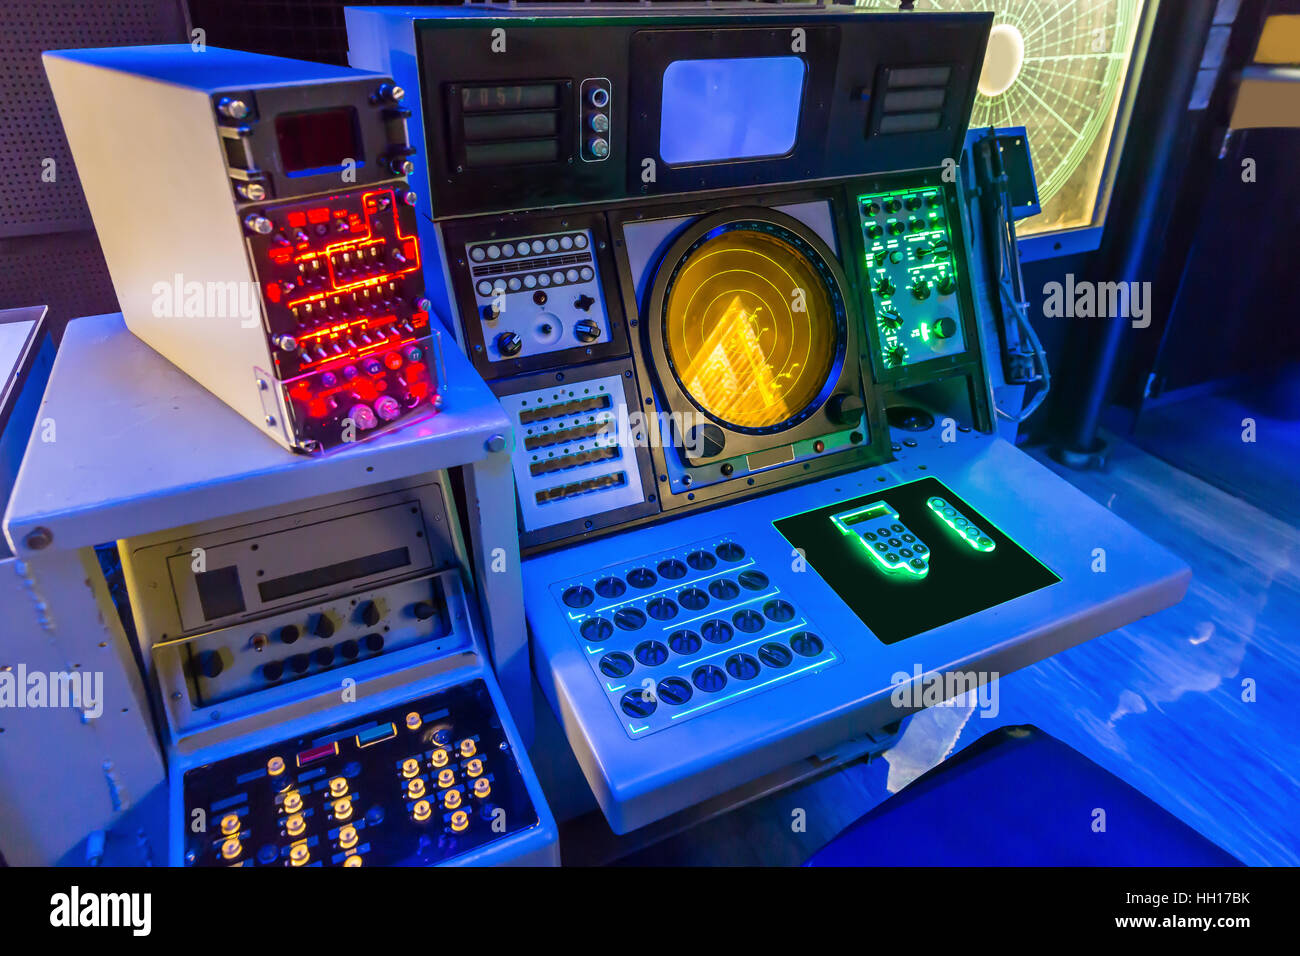 Aircraft carrier navigation equipment. Stock Photo